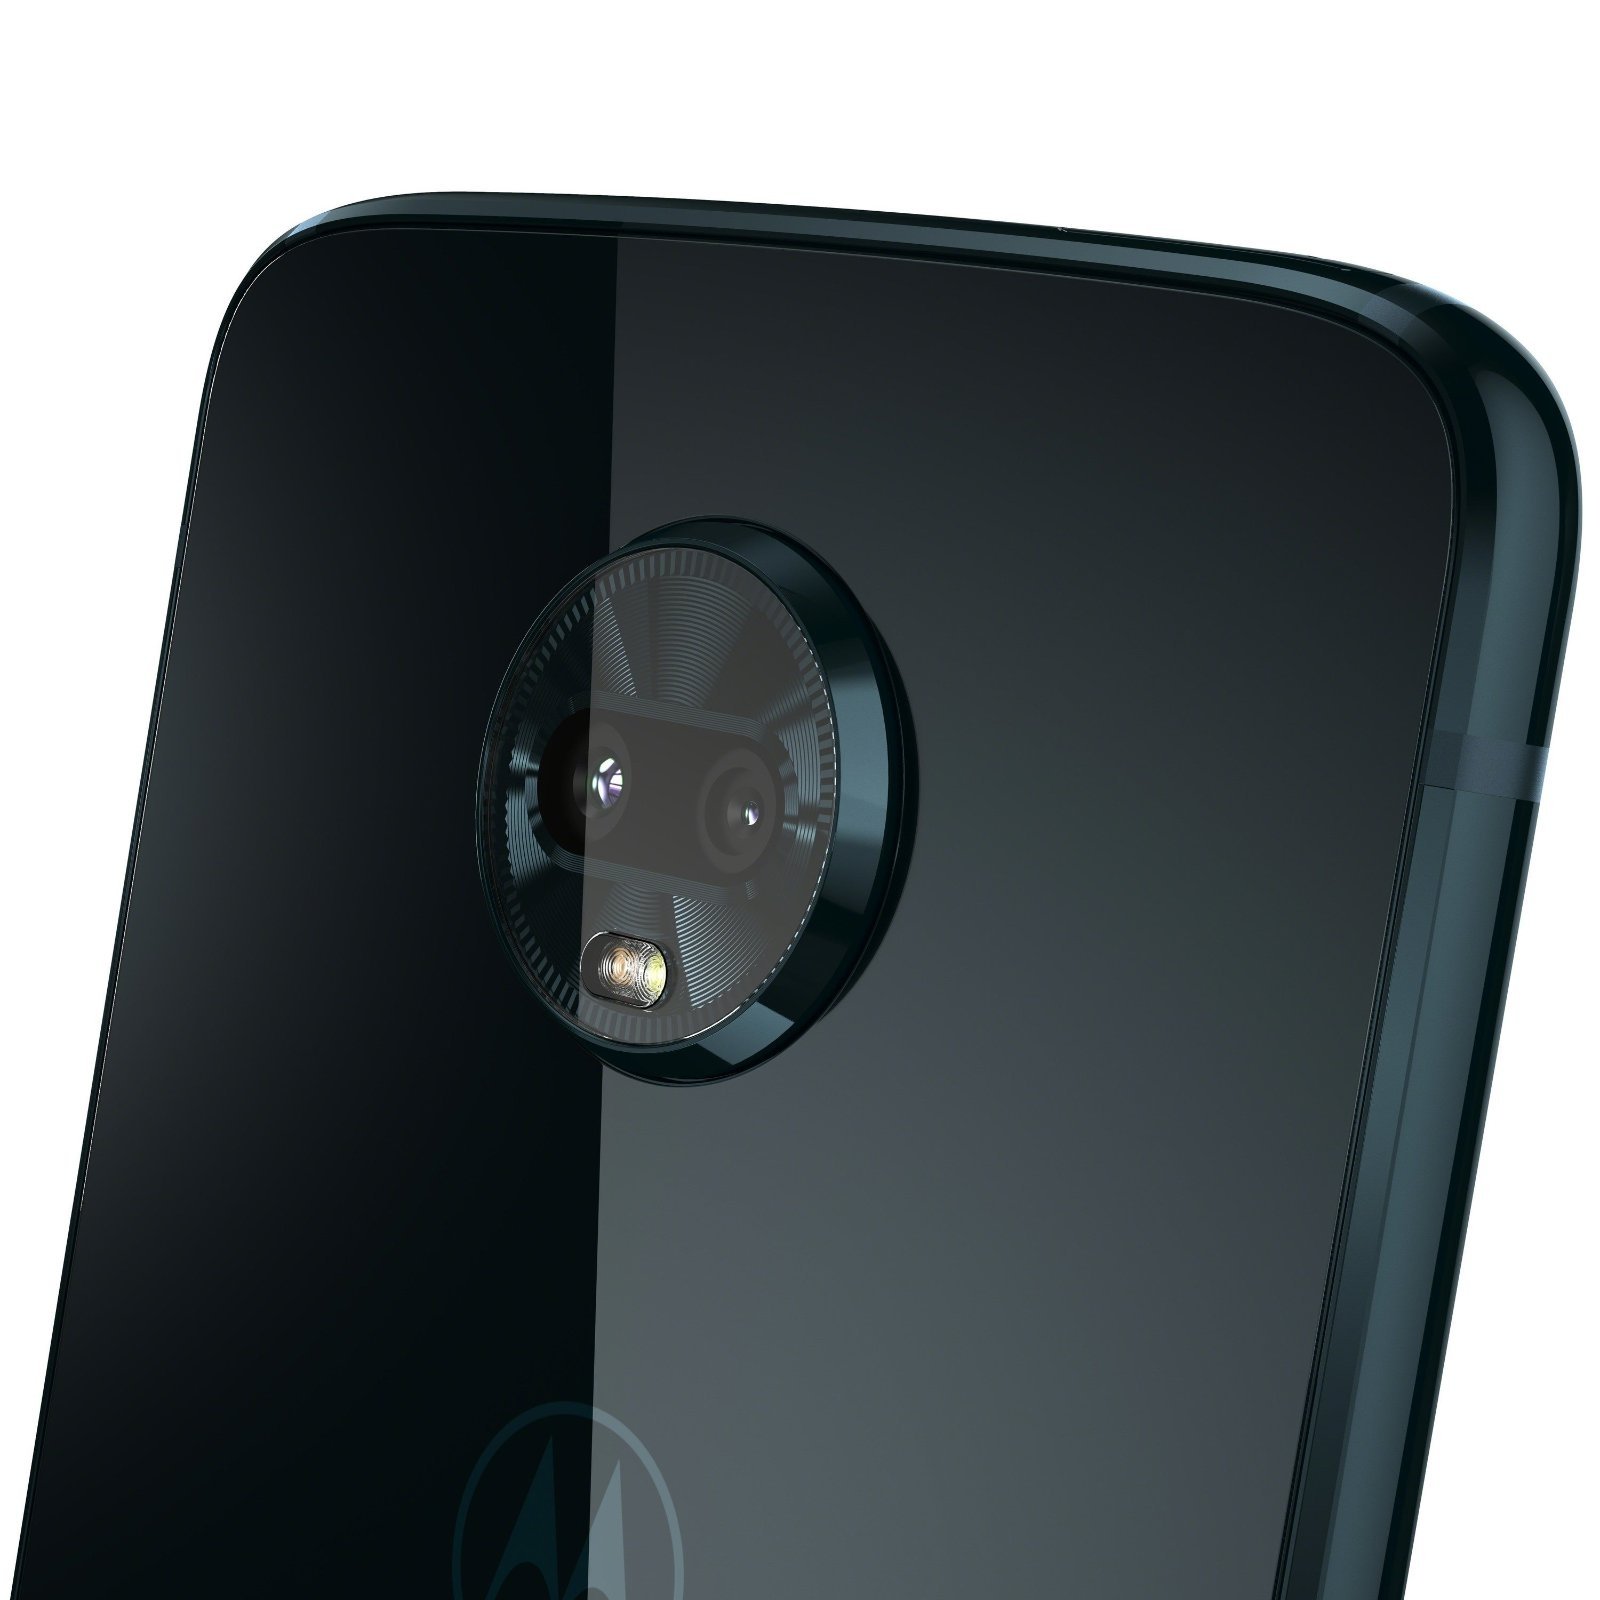 El nuevo Motorola Moto Z3 Play es oficial: todas las características y precios